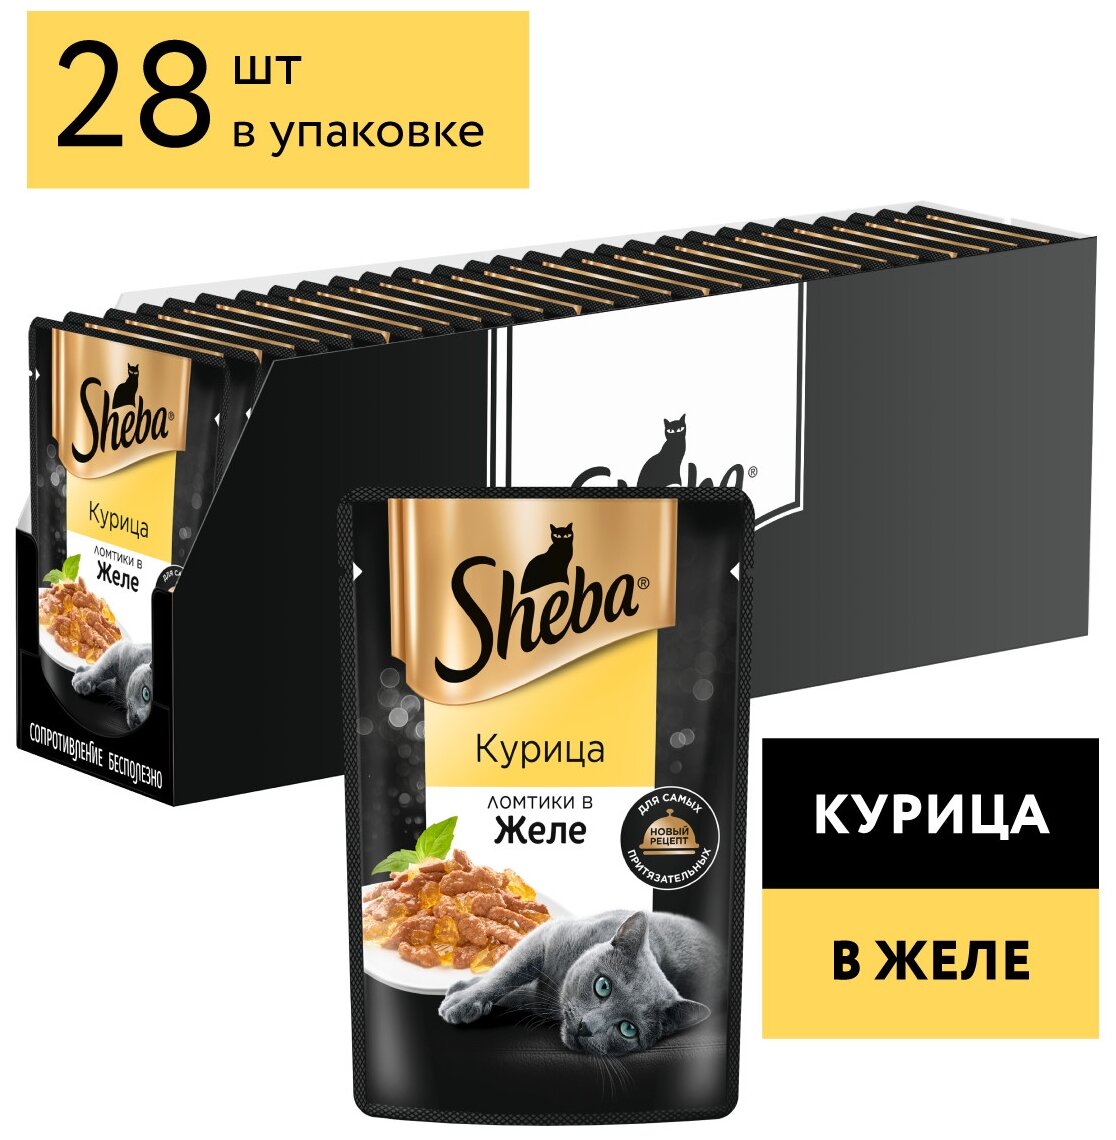 Влажный корм для кошек Sheba Pleasure, курица 28 шт. х 75 г (кусочки в желе) — купить в интернет-магазине по низкой цене на Яндекс Маркете